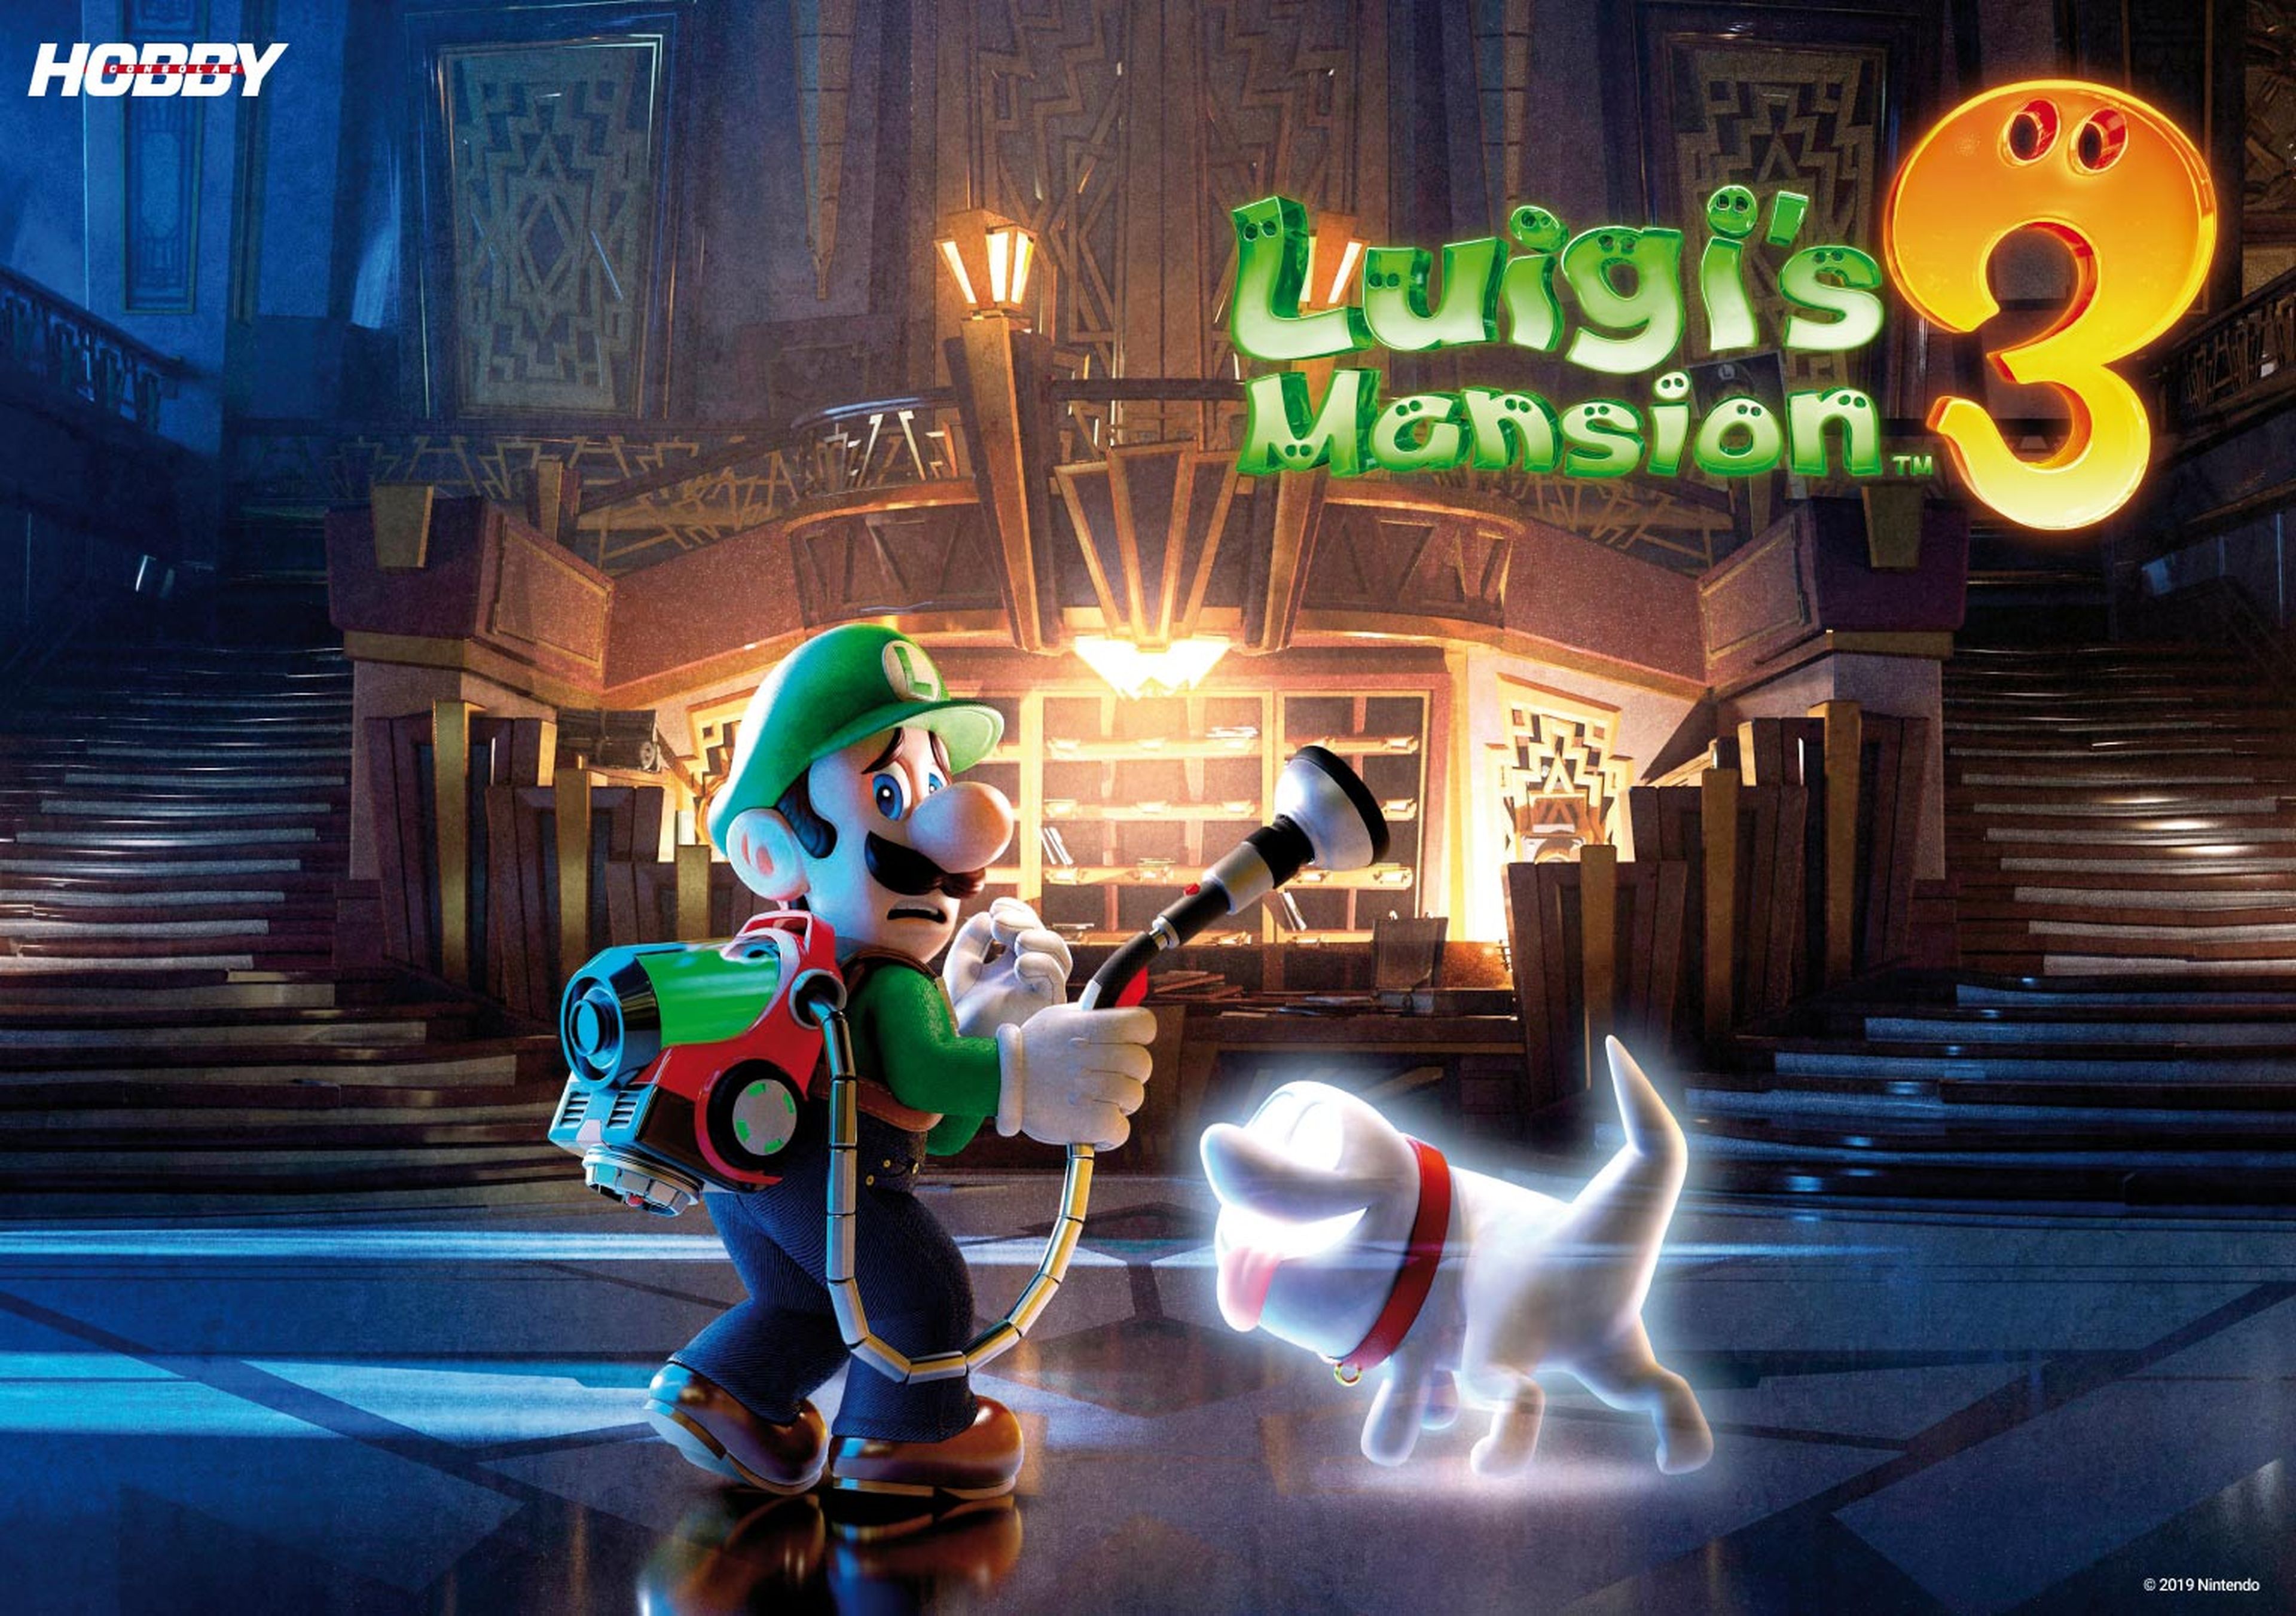 Hobby Consolas 341, a la venta con póster de Pokémon y Luigi's Mansion